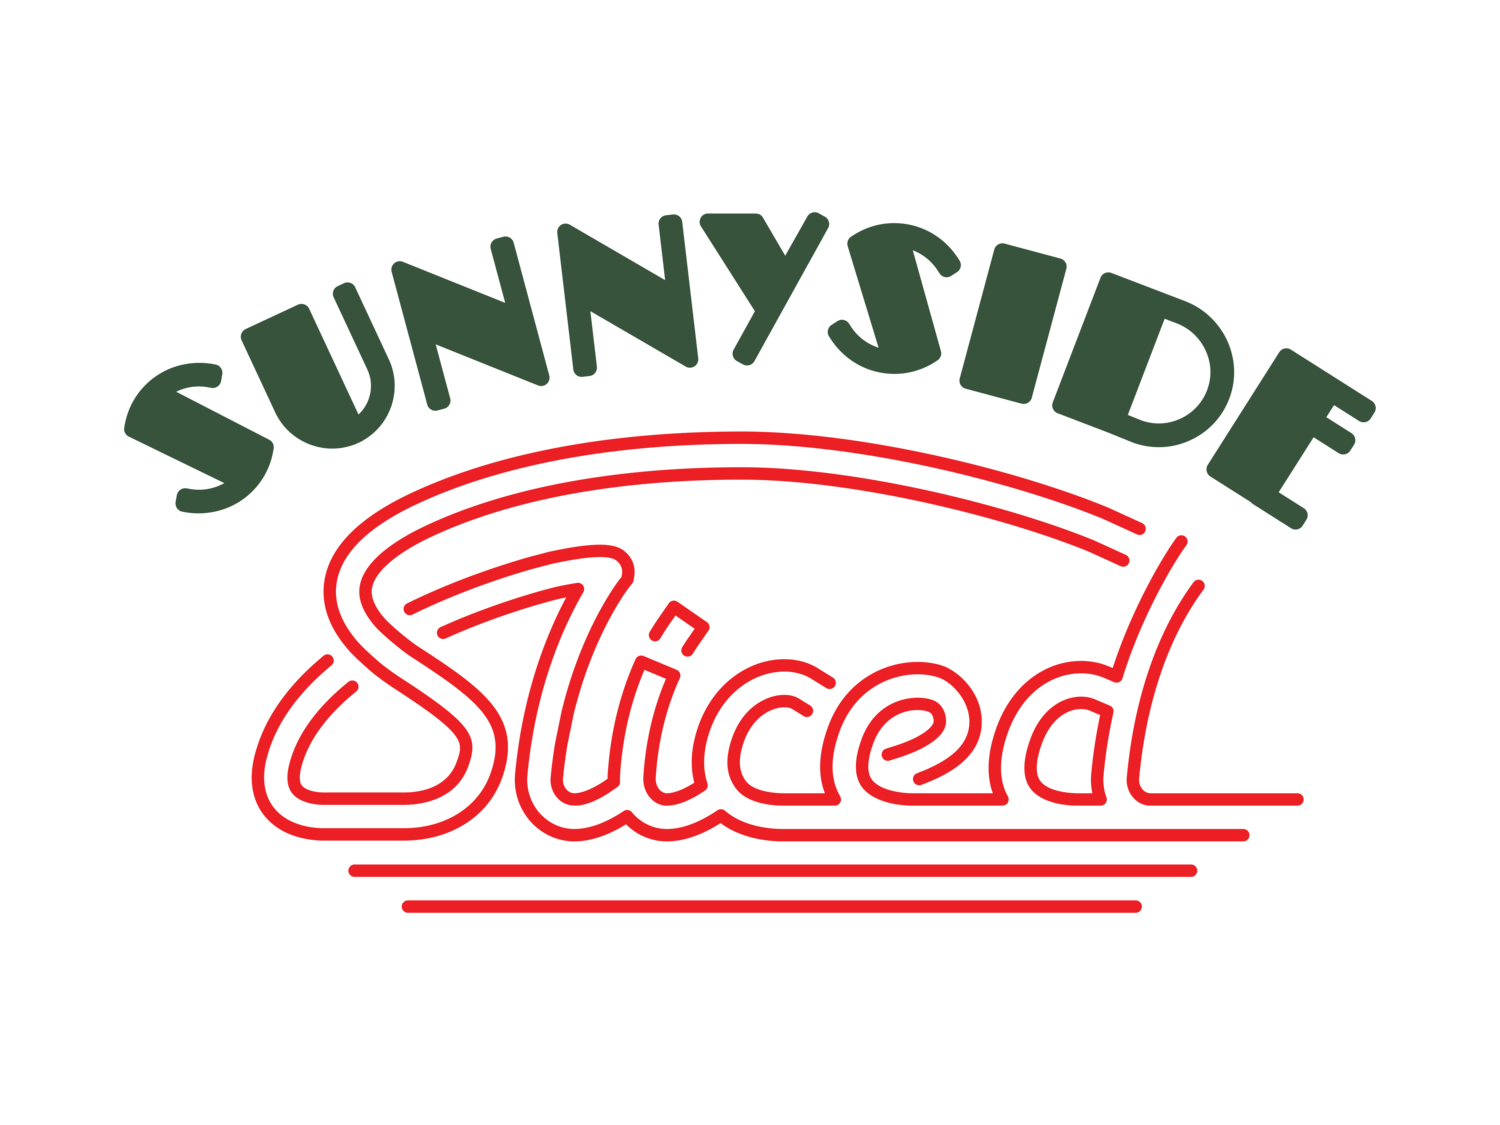 Sunnyside Sliced